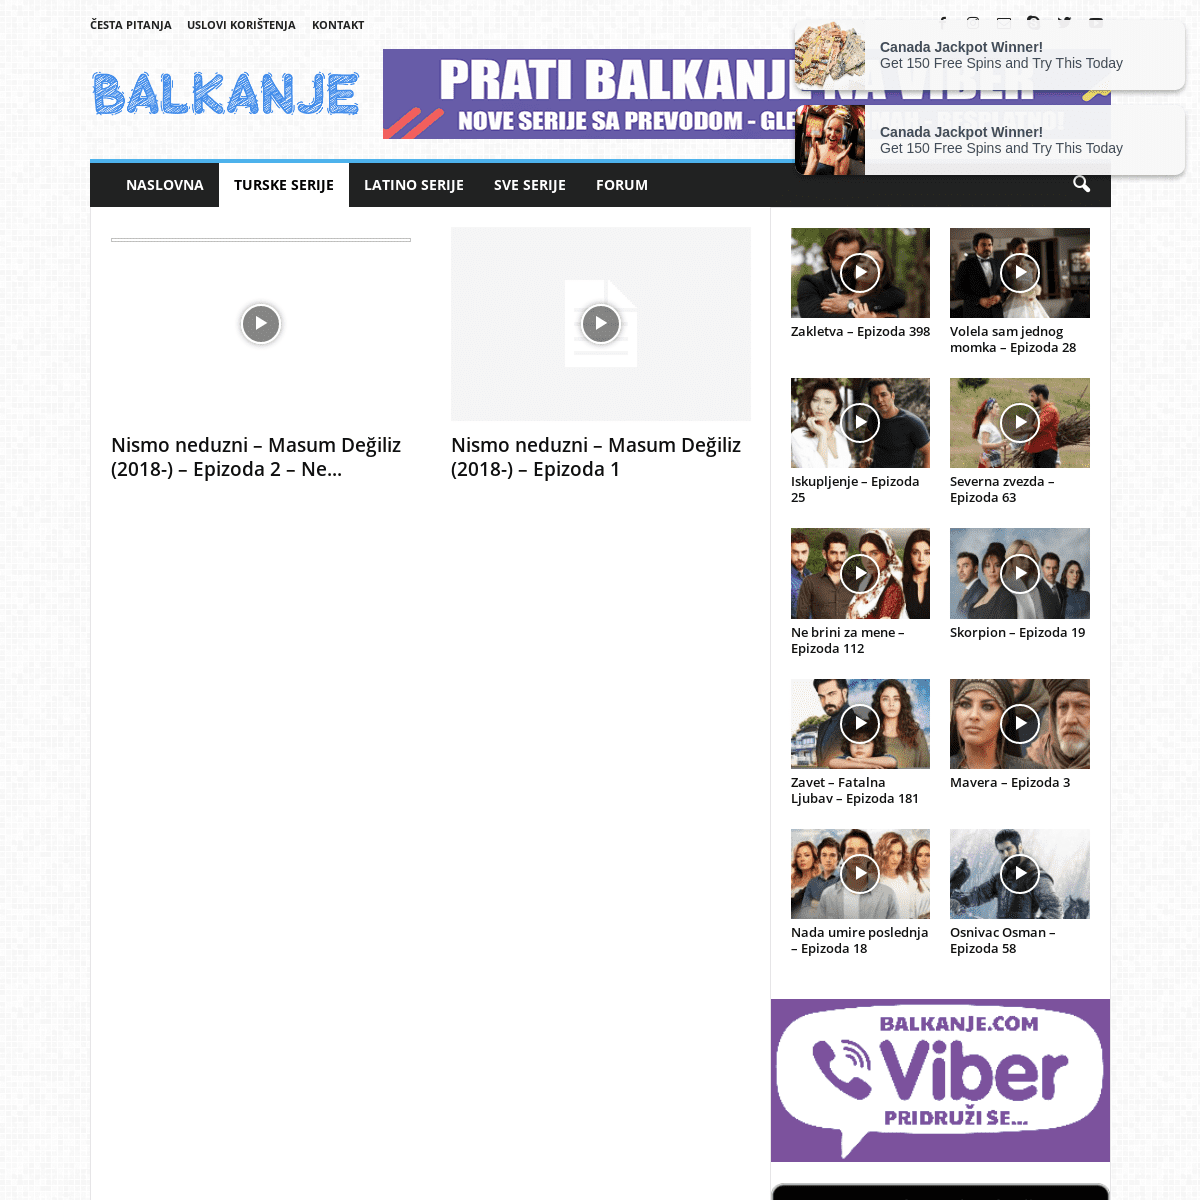 A complete backup of https://balkanje.com/turske-serije/nismo-neduzni-2018/